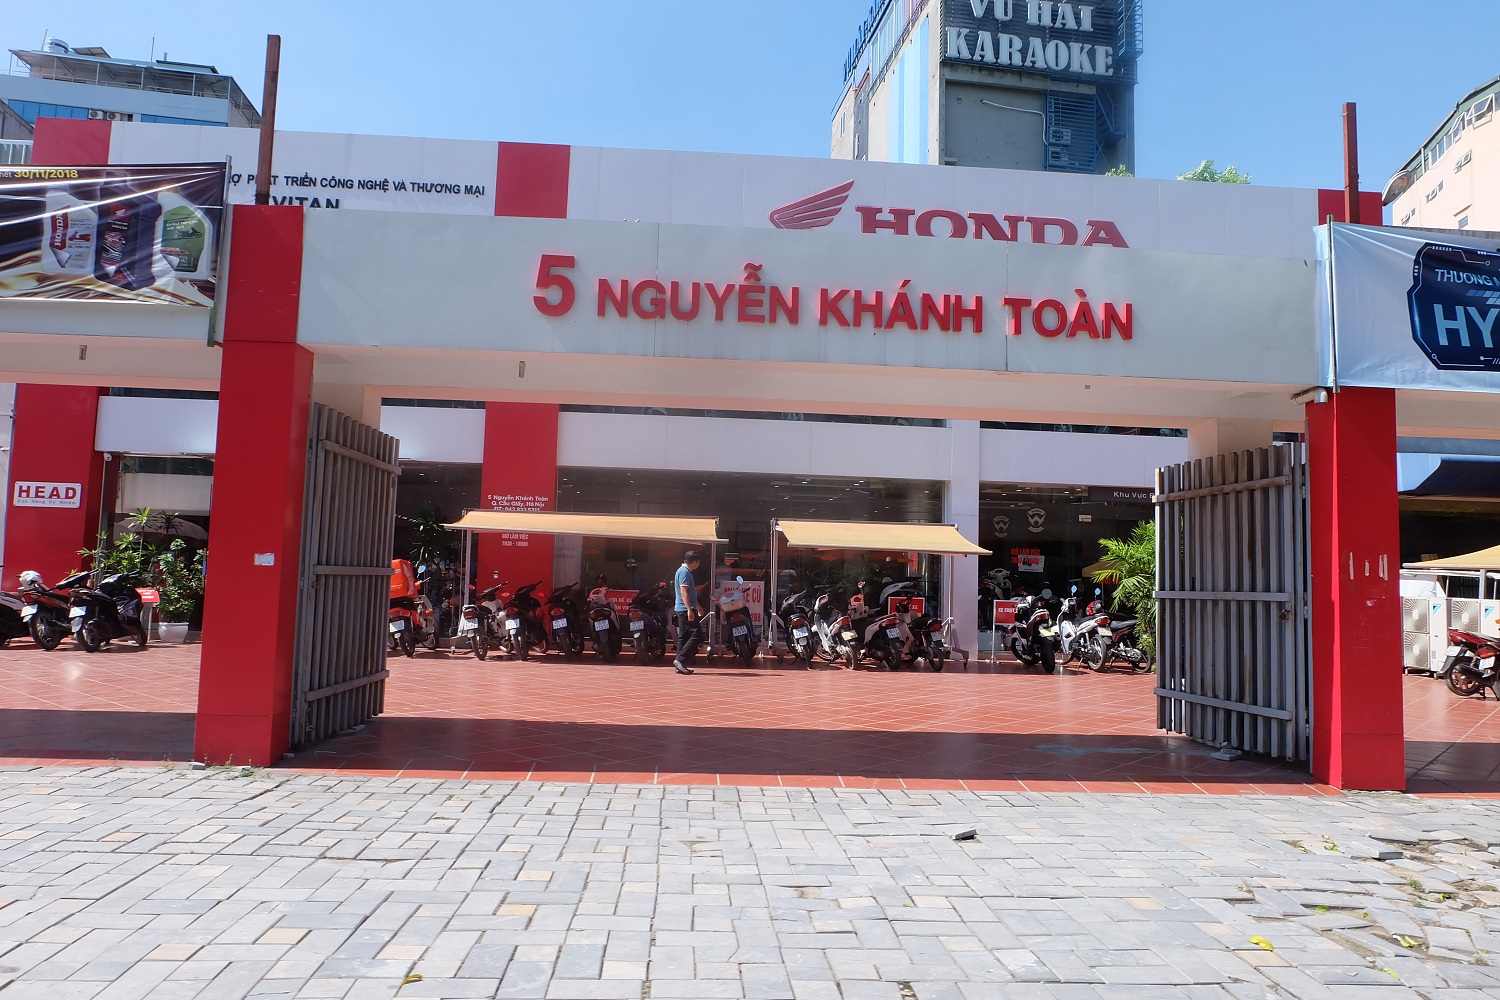 Cửa hàng Honda số 5 Nguyễn Khánh Toàn mở rộng cửa đón khách